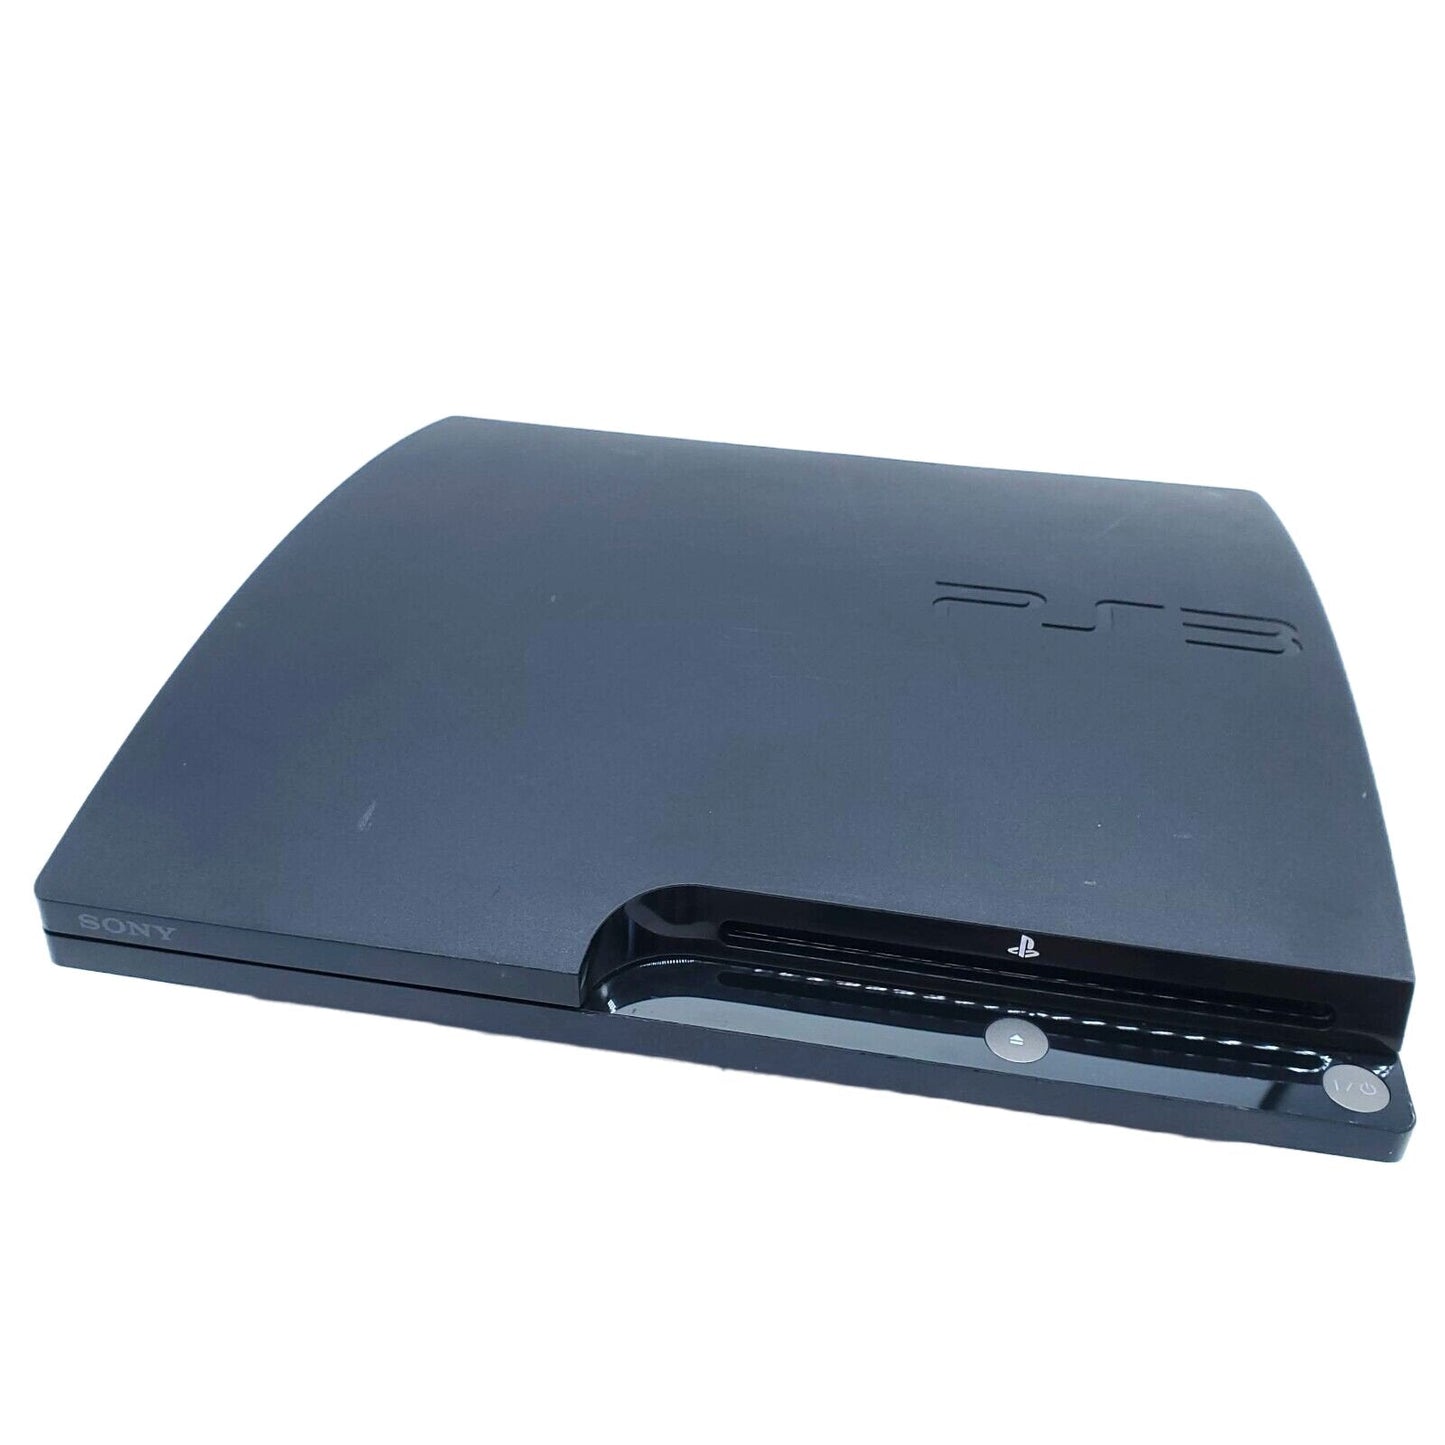 Playstation 3 Slim 320GB Console Only - Black 2501B 3001B